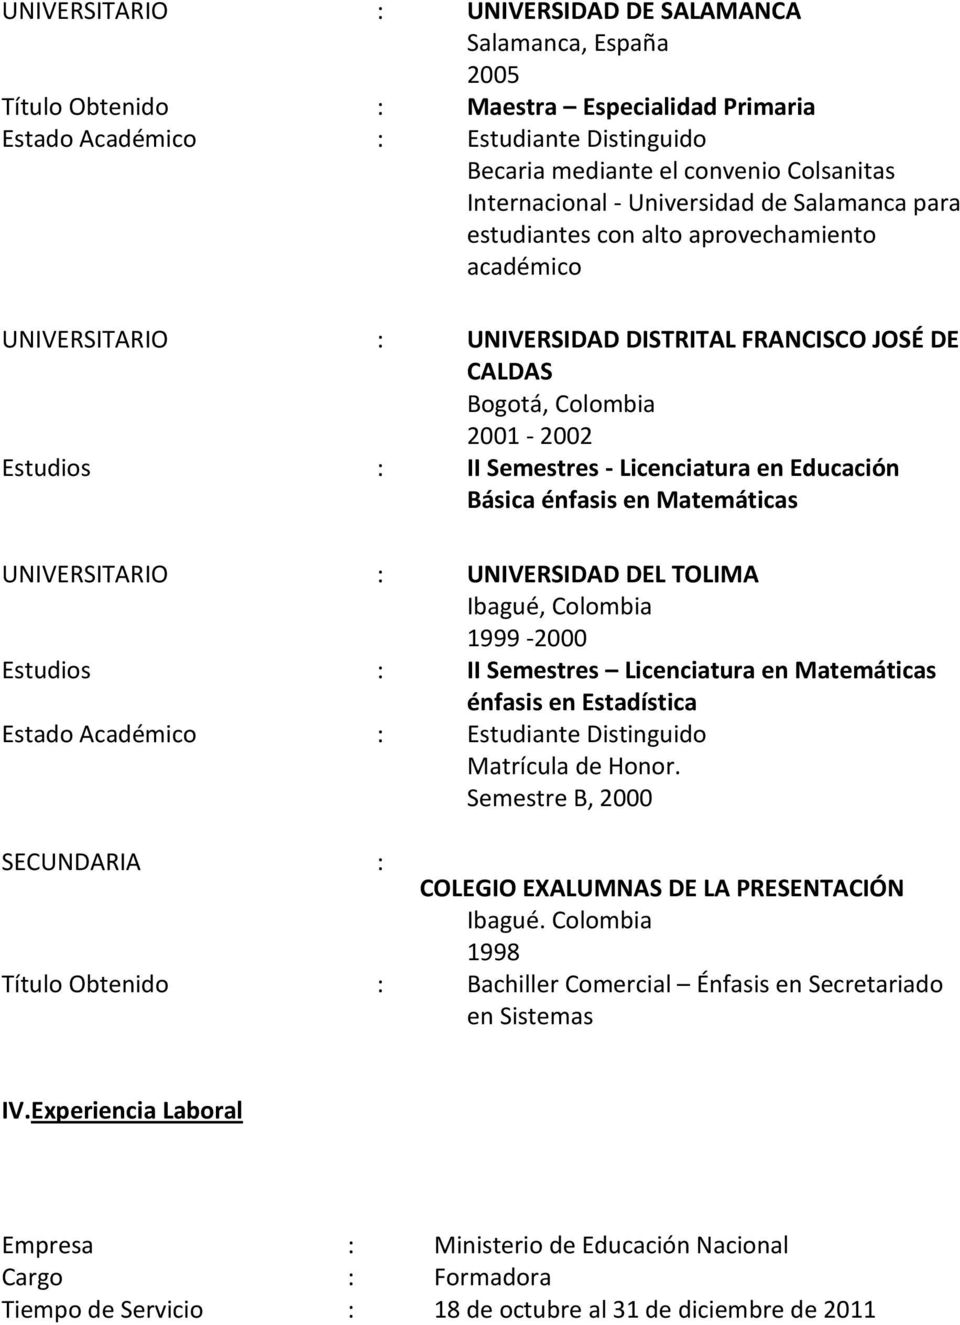 Licenciatura en Educación Básica énfasis en Matemáticas UNIVERSITARIO : UNIVERSIDAD DEL TOLIMA Ibagué, Colombia 1999-2000 Estudios : II Semestres Licenciatura en Matemáticas énfasis en Estadística